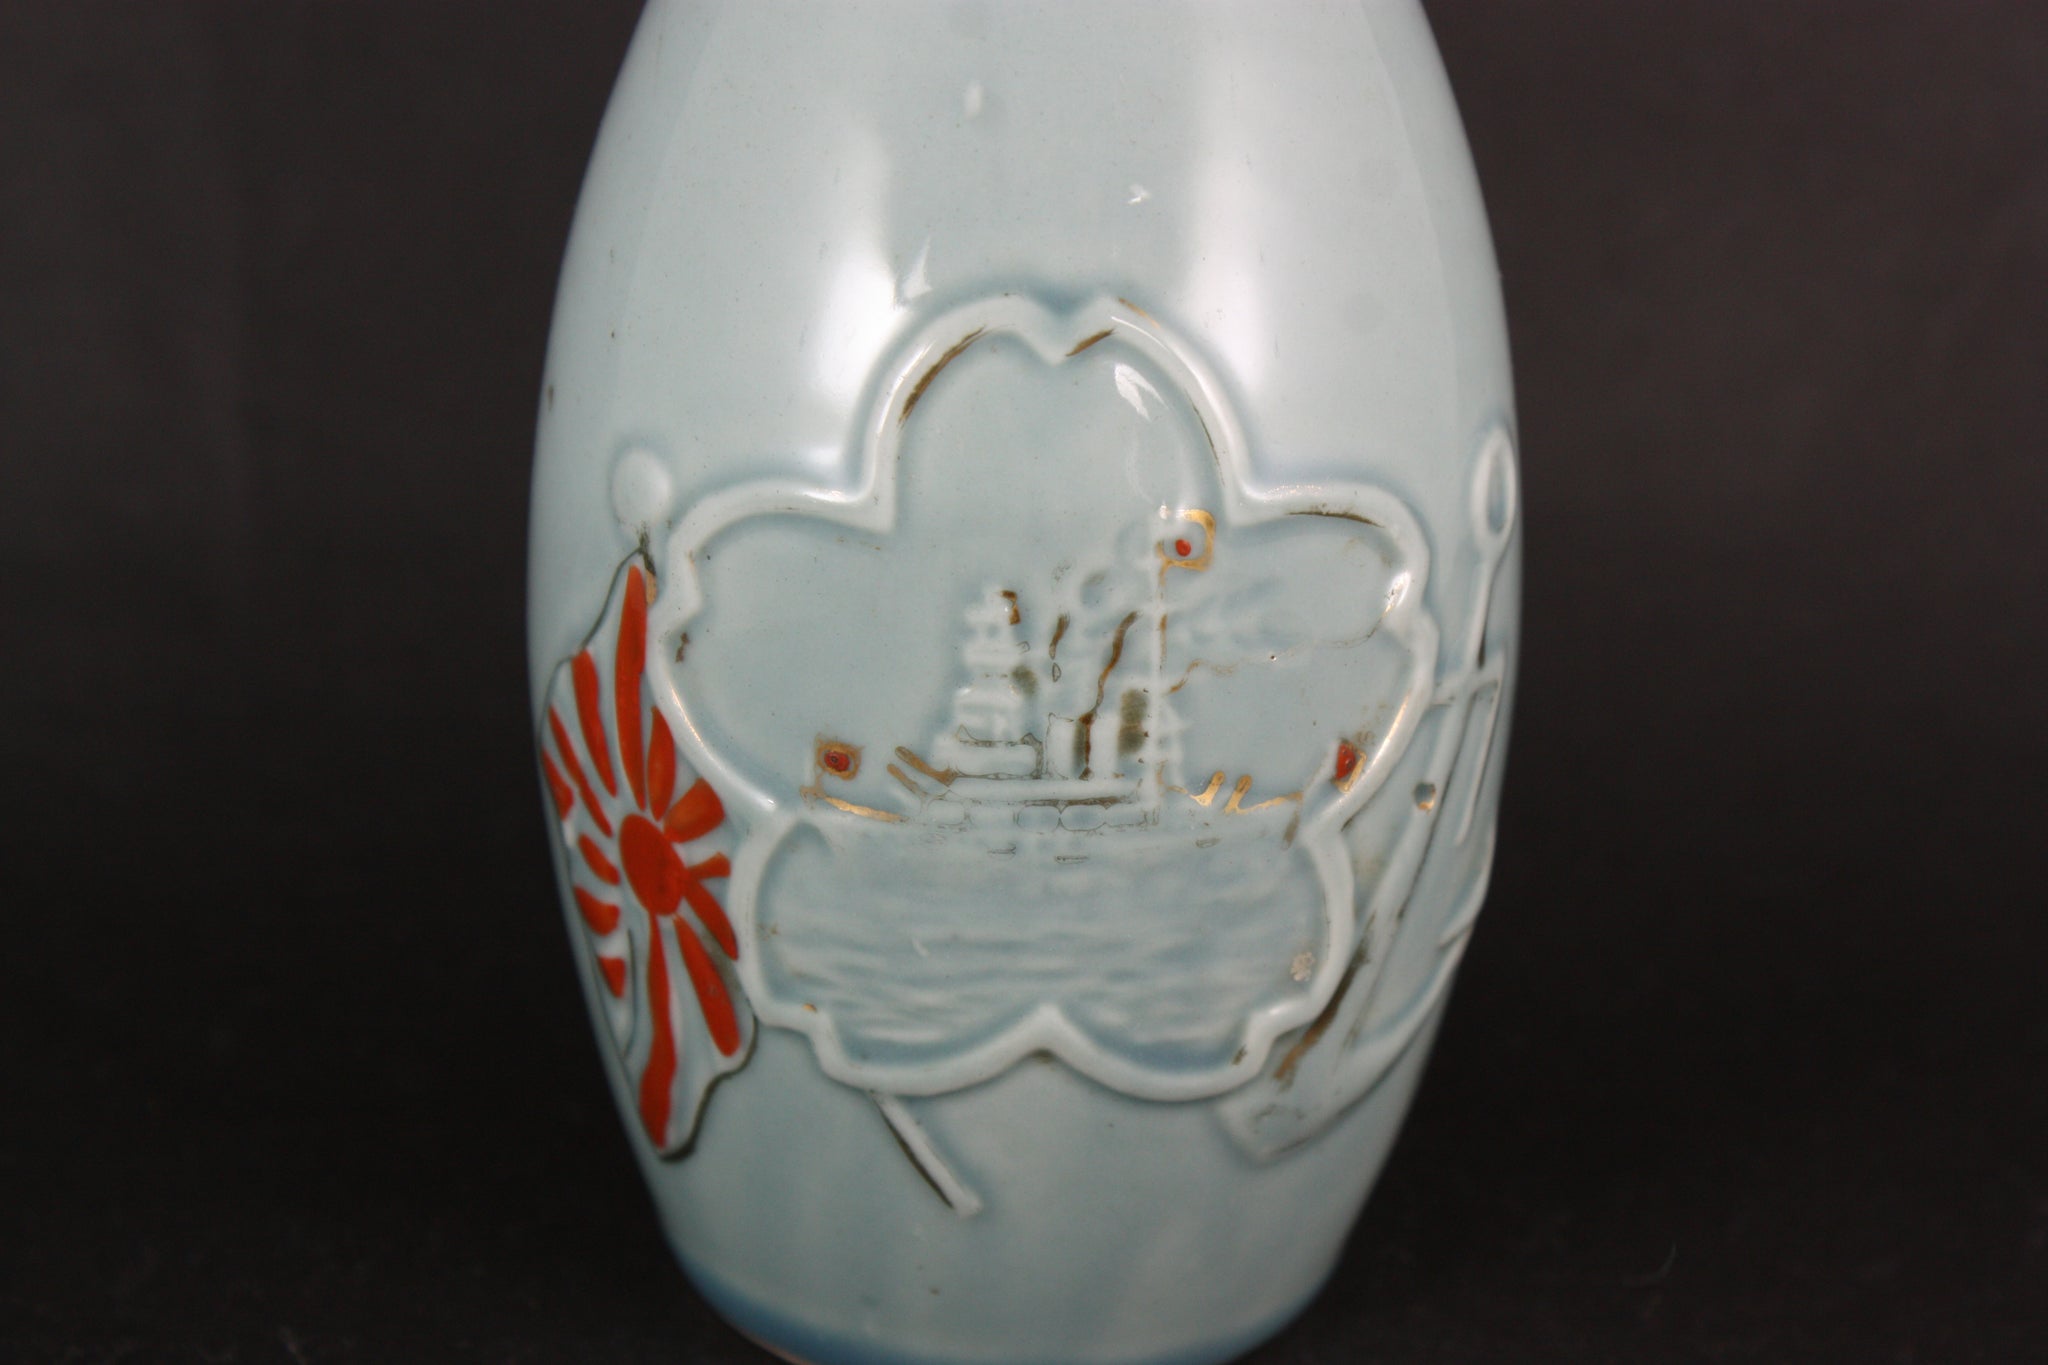 Antique Japanese Military Embossed Battleship Navy Sake Bottle